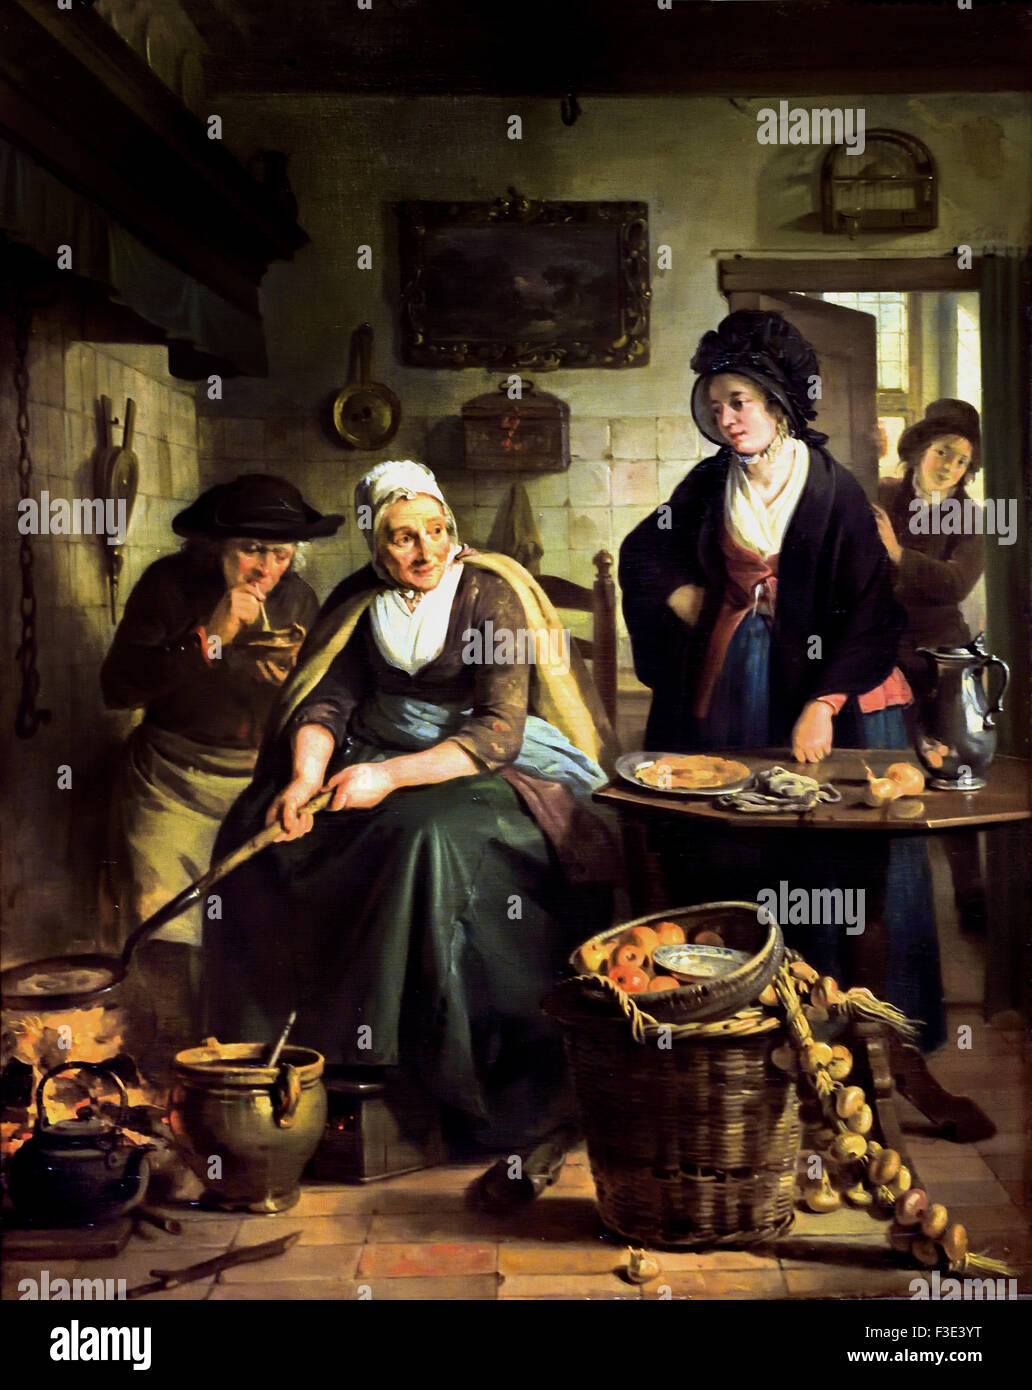 La cuisson des crêpes ( femme ) Amsterdam Herengracht Adriaan de Lelie 1790 - 1810 Adriaan de Lelie 1755 - 1820 Pays-Bas Néerlandais Banque D'Images